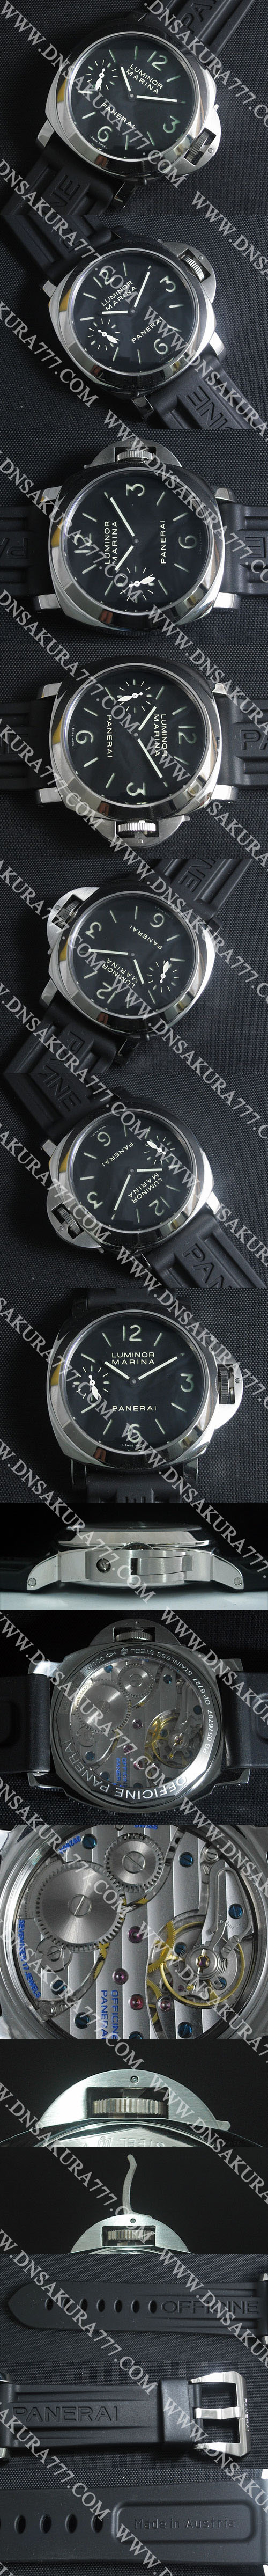 腕時計情報パネライ ルミノール マリーナ PAM00111 (手巻き)